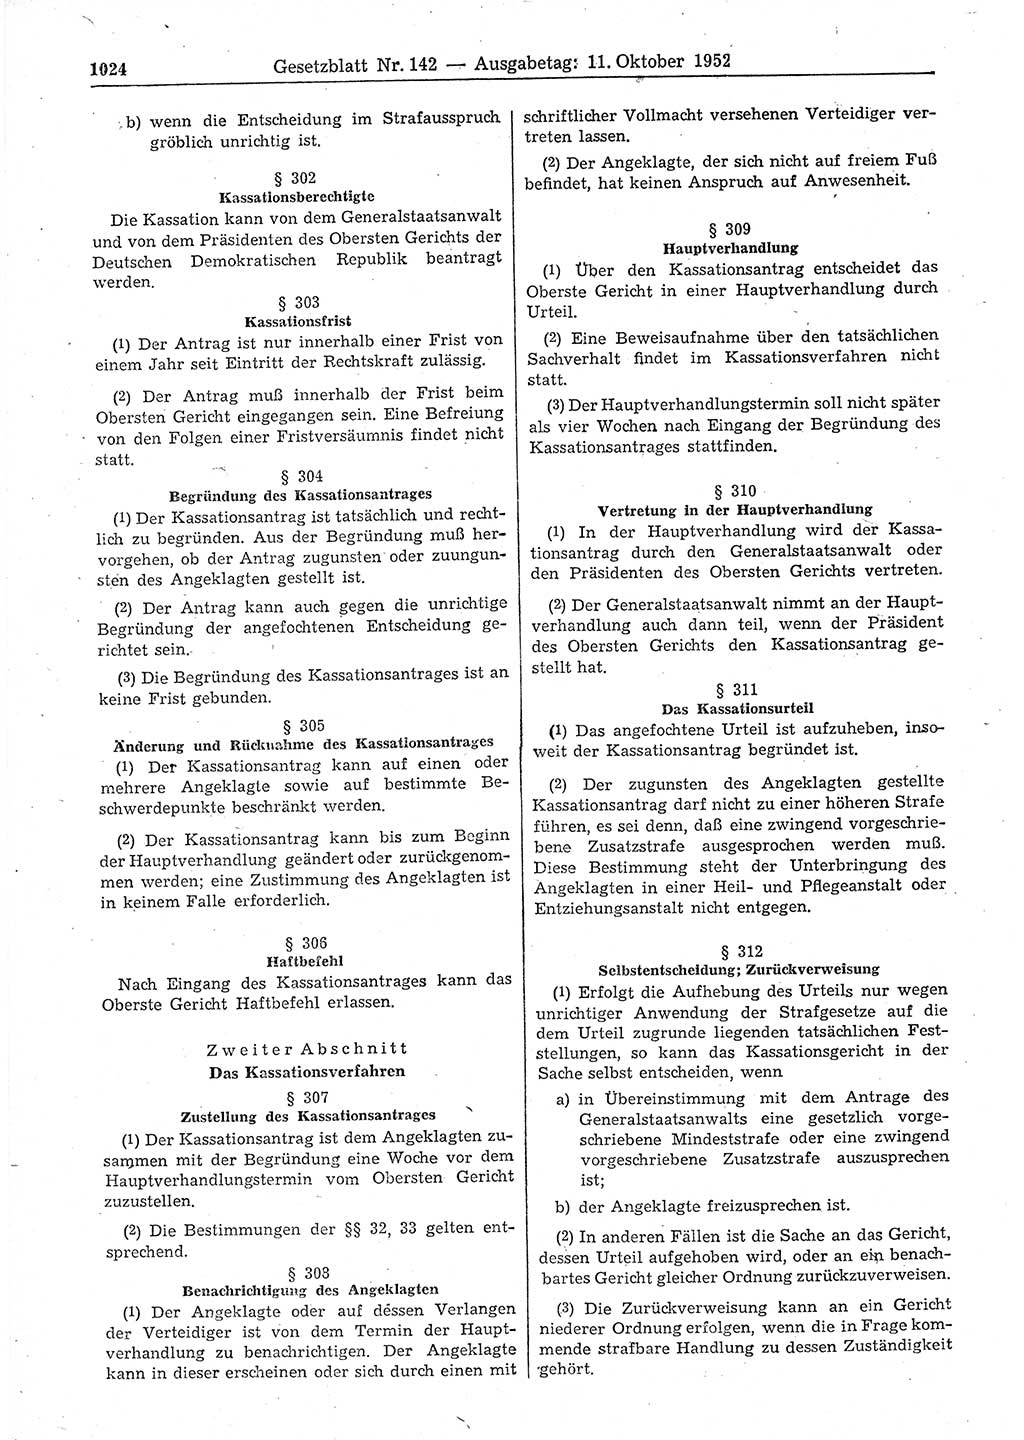 Gesetzblatt (GBl.) der Deutschen Demokratischen Republik (DDR) 1952, Seite 1024 (GBl. DDR 1952, S. 1024)